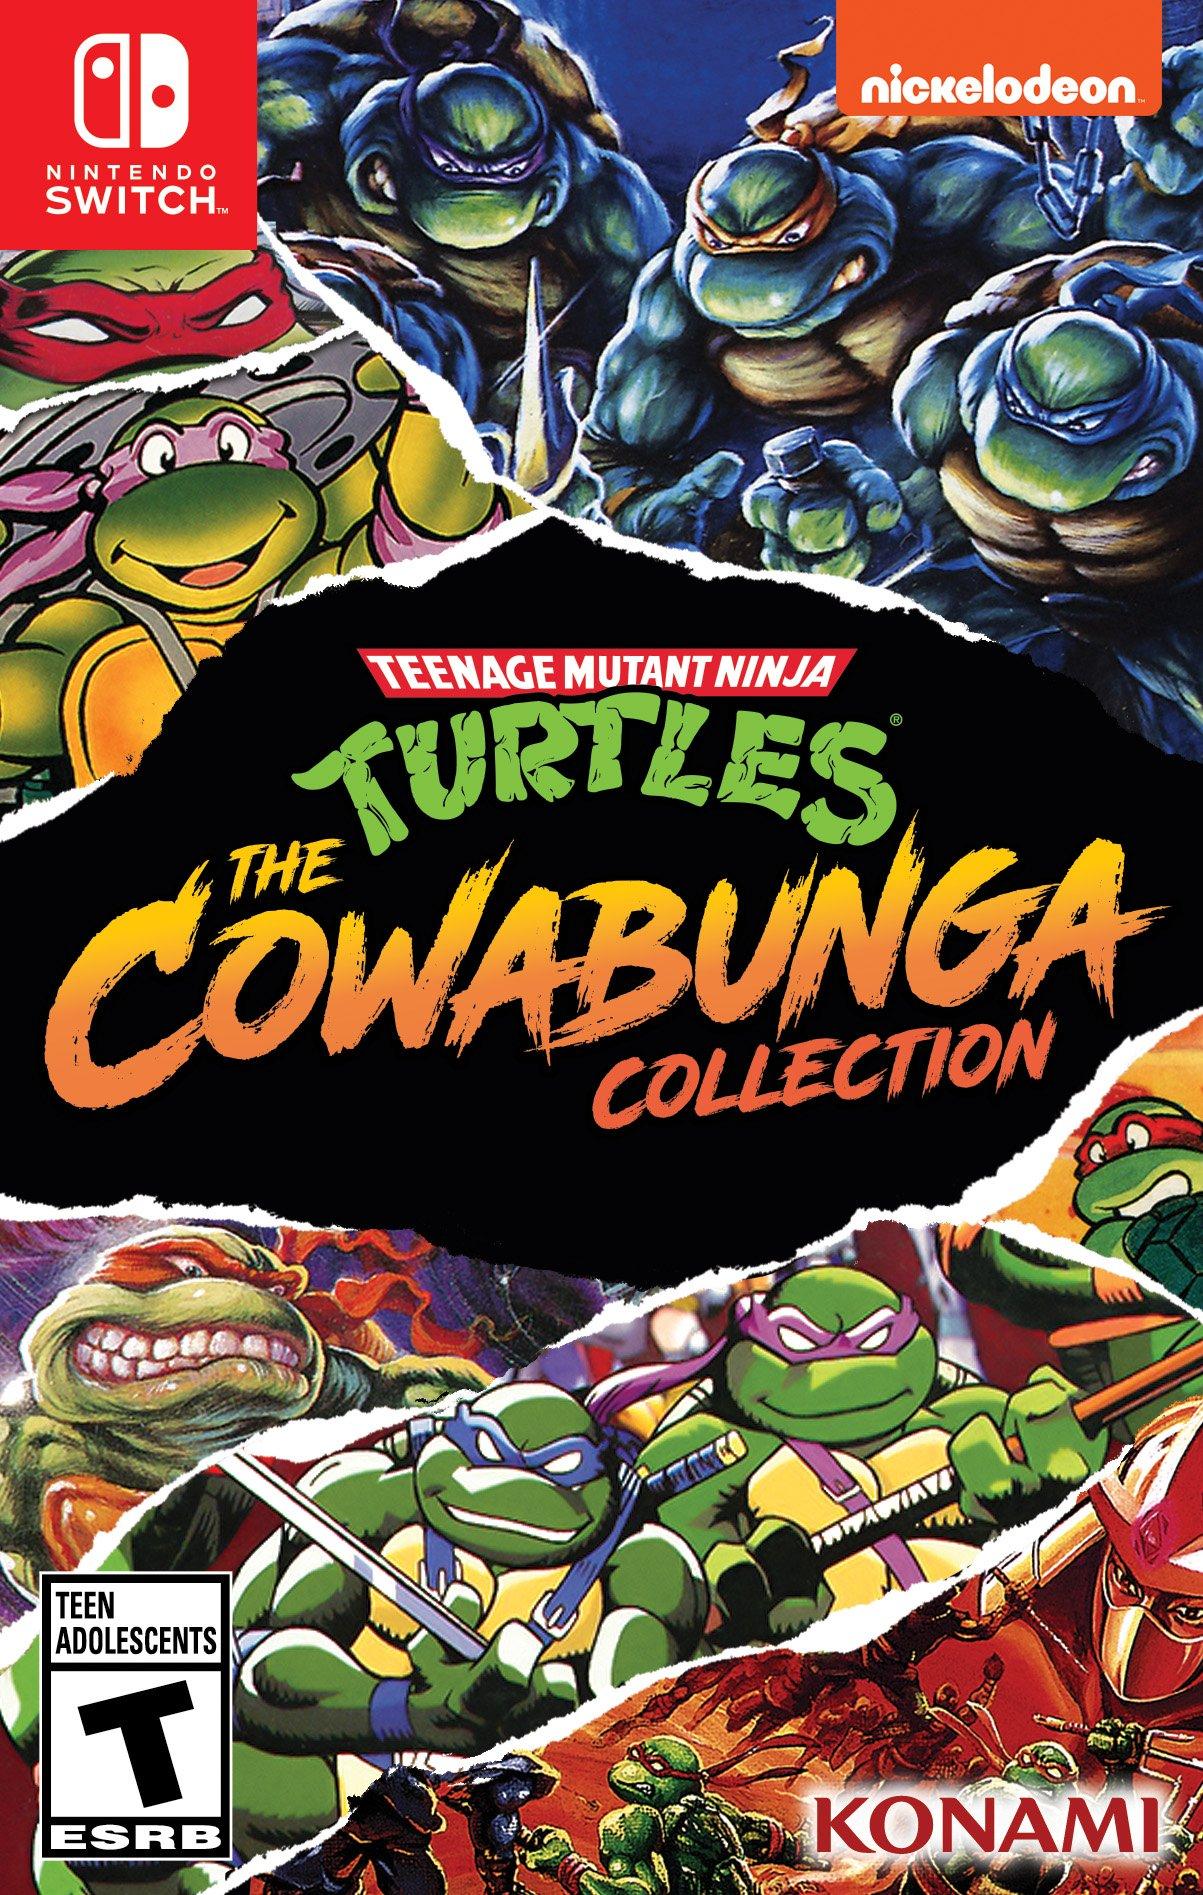 Switch Turtles: - Nintendo Collection | Cowabunga GameStop Mutant Teenage | Switch Nintendo The Ninja